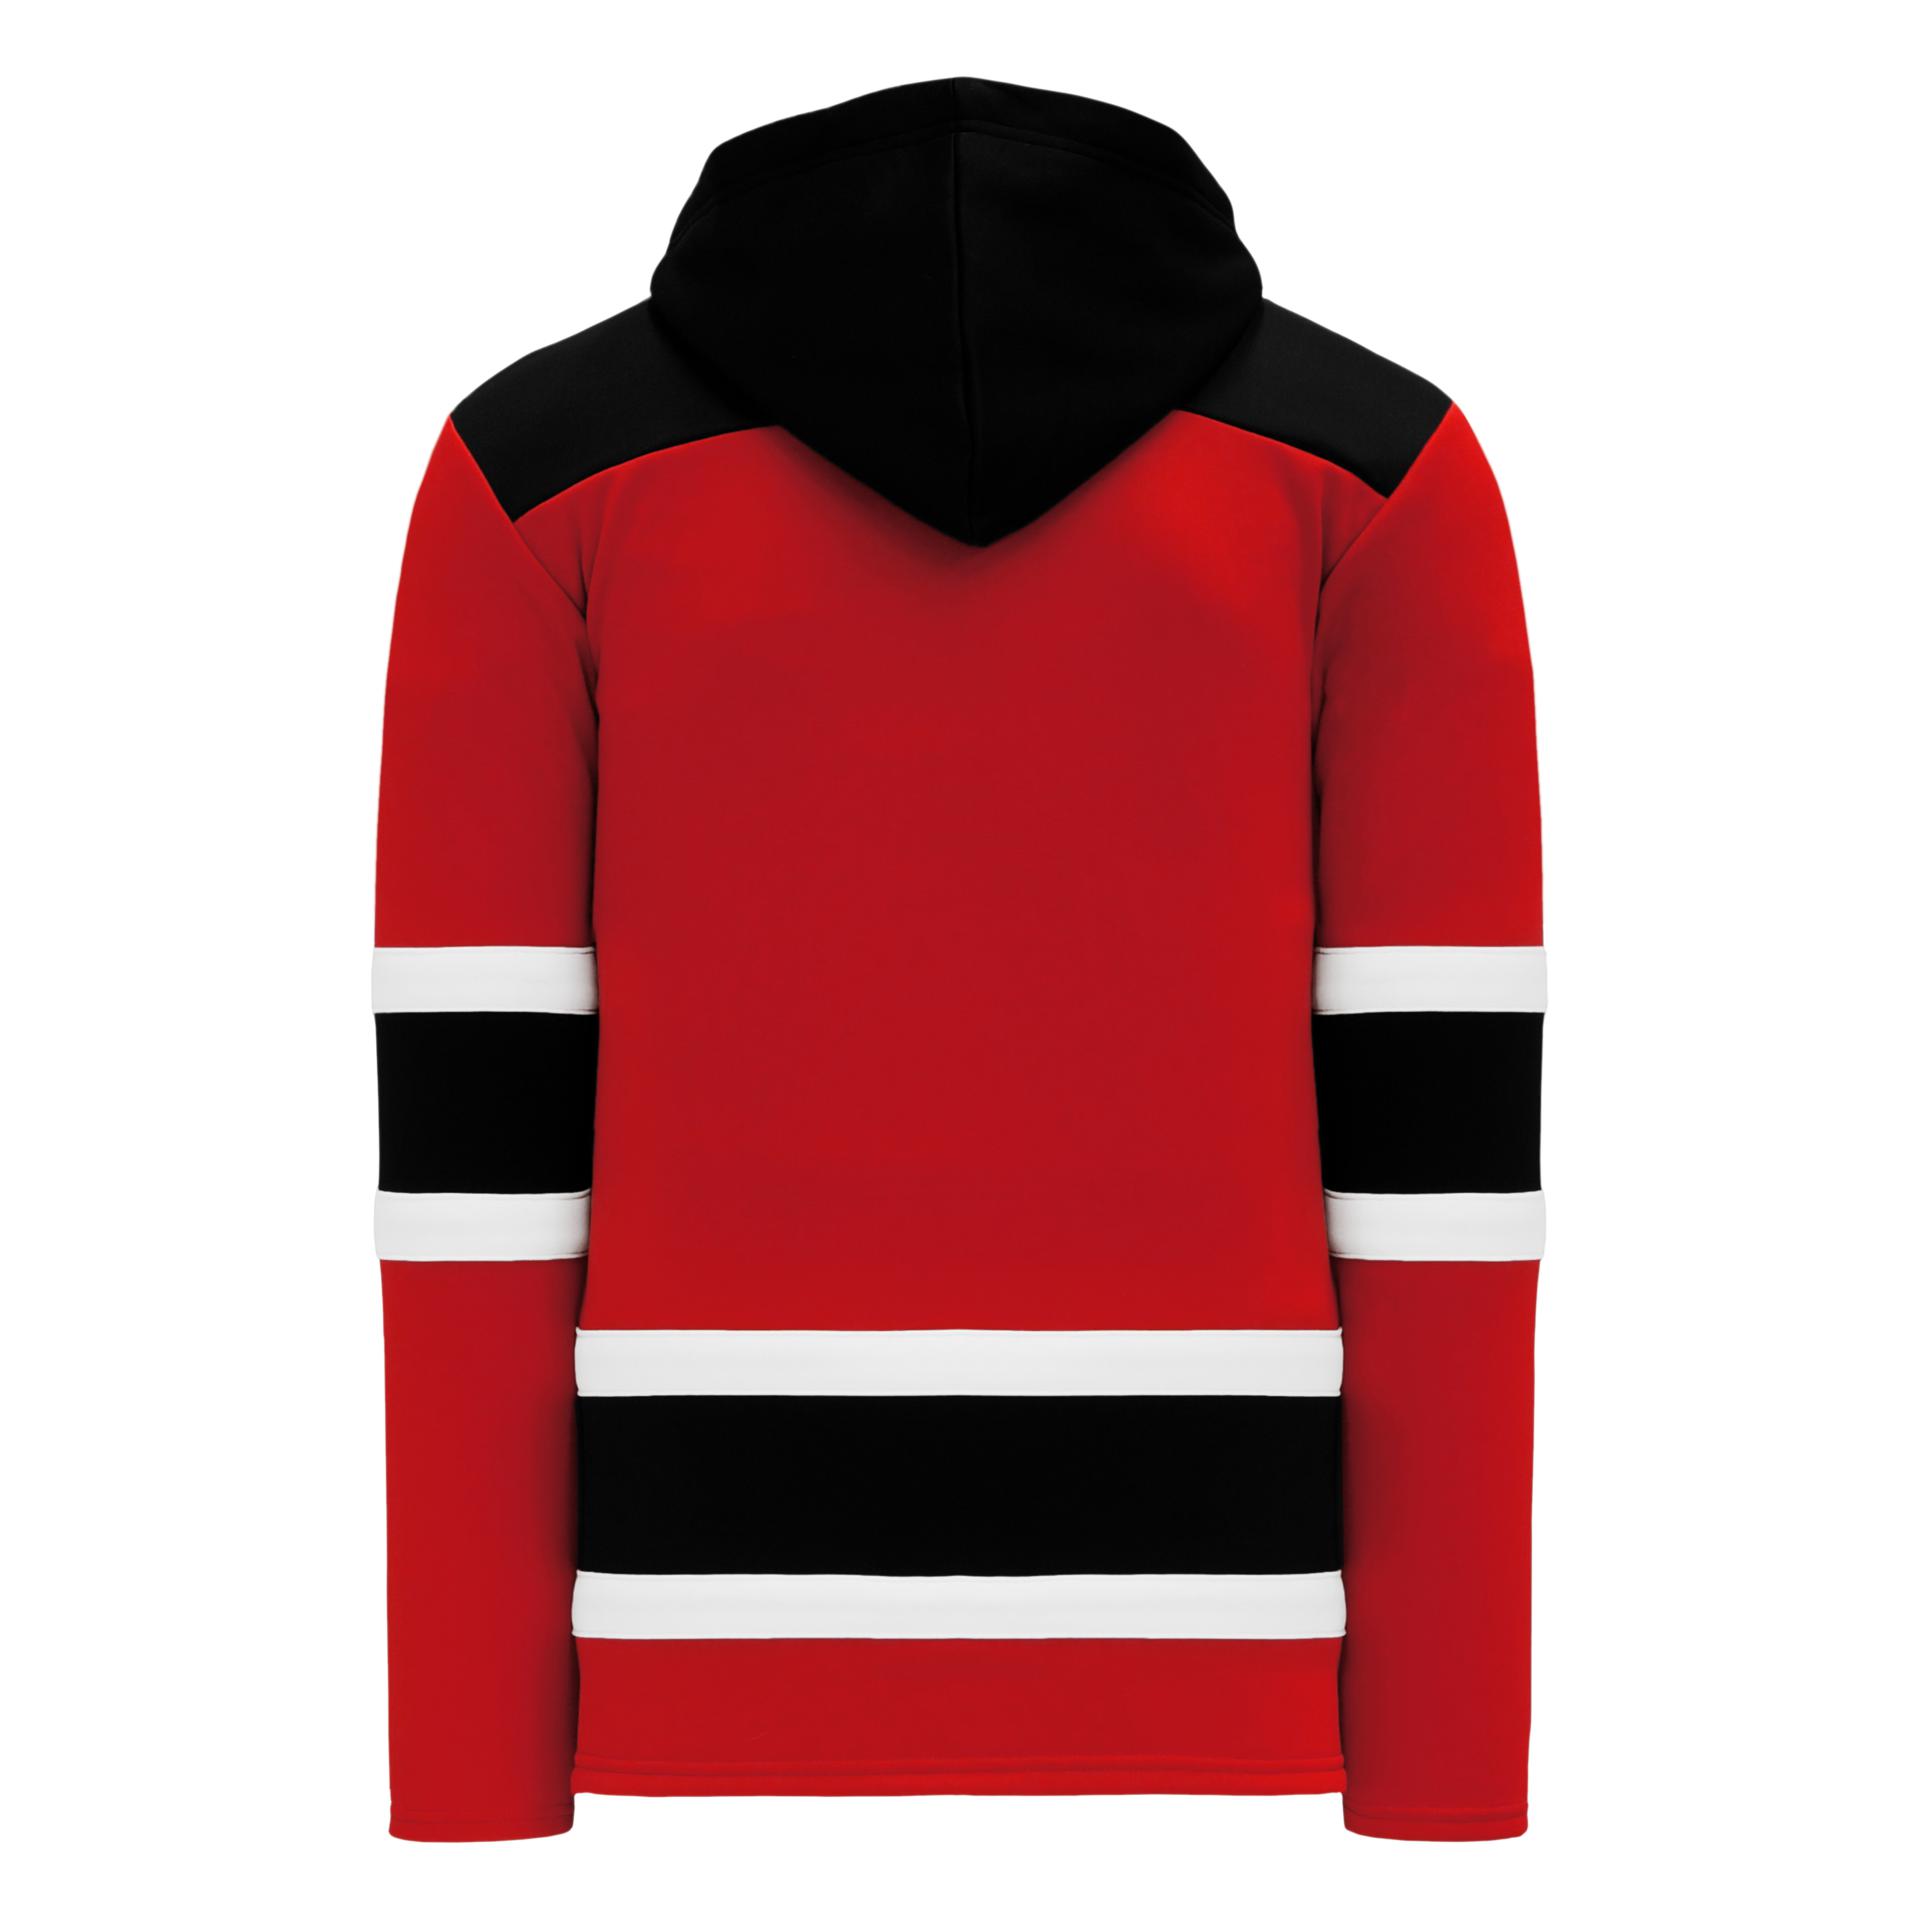 New Jersey Devils NHL Fan Sweaters for sale